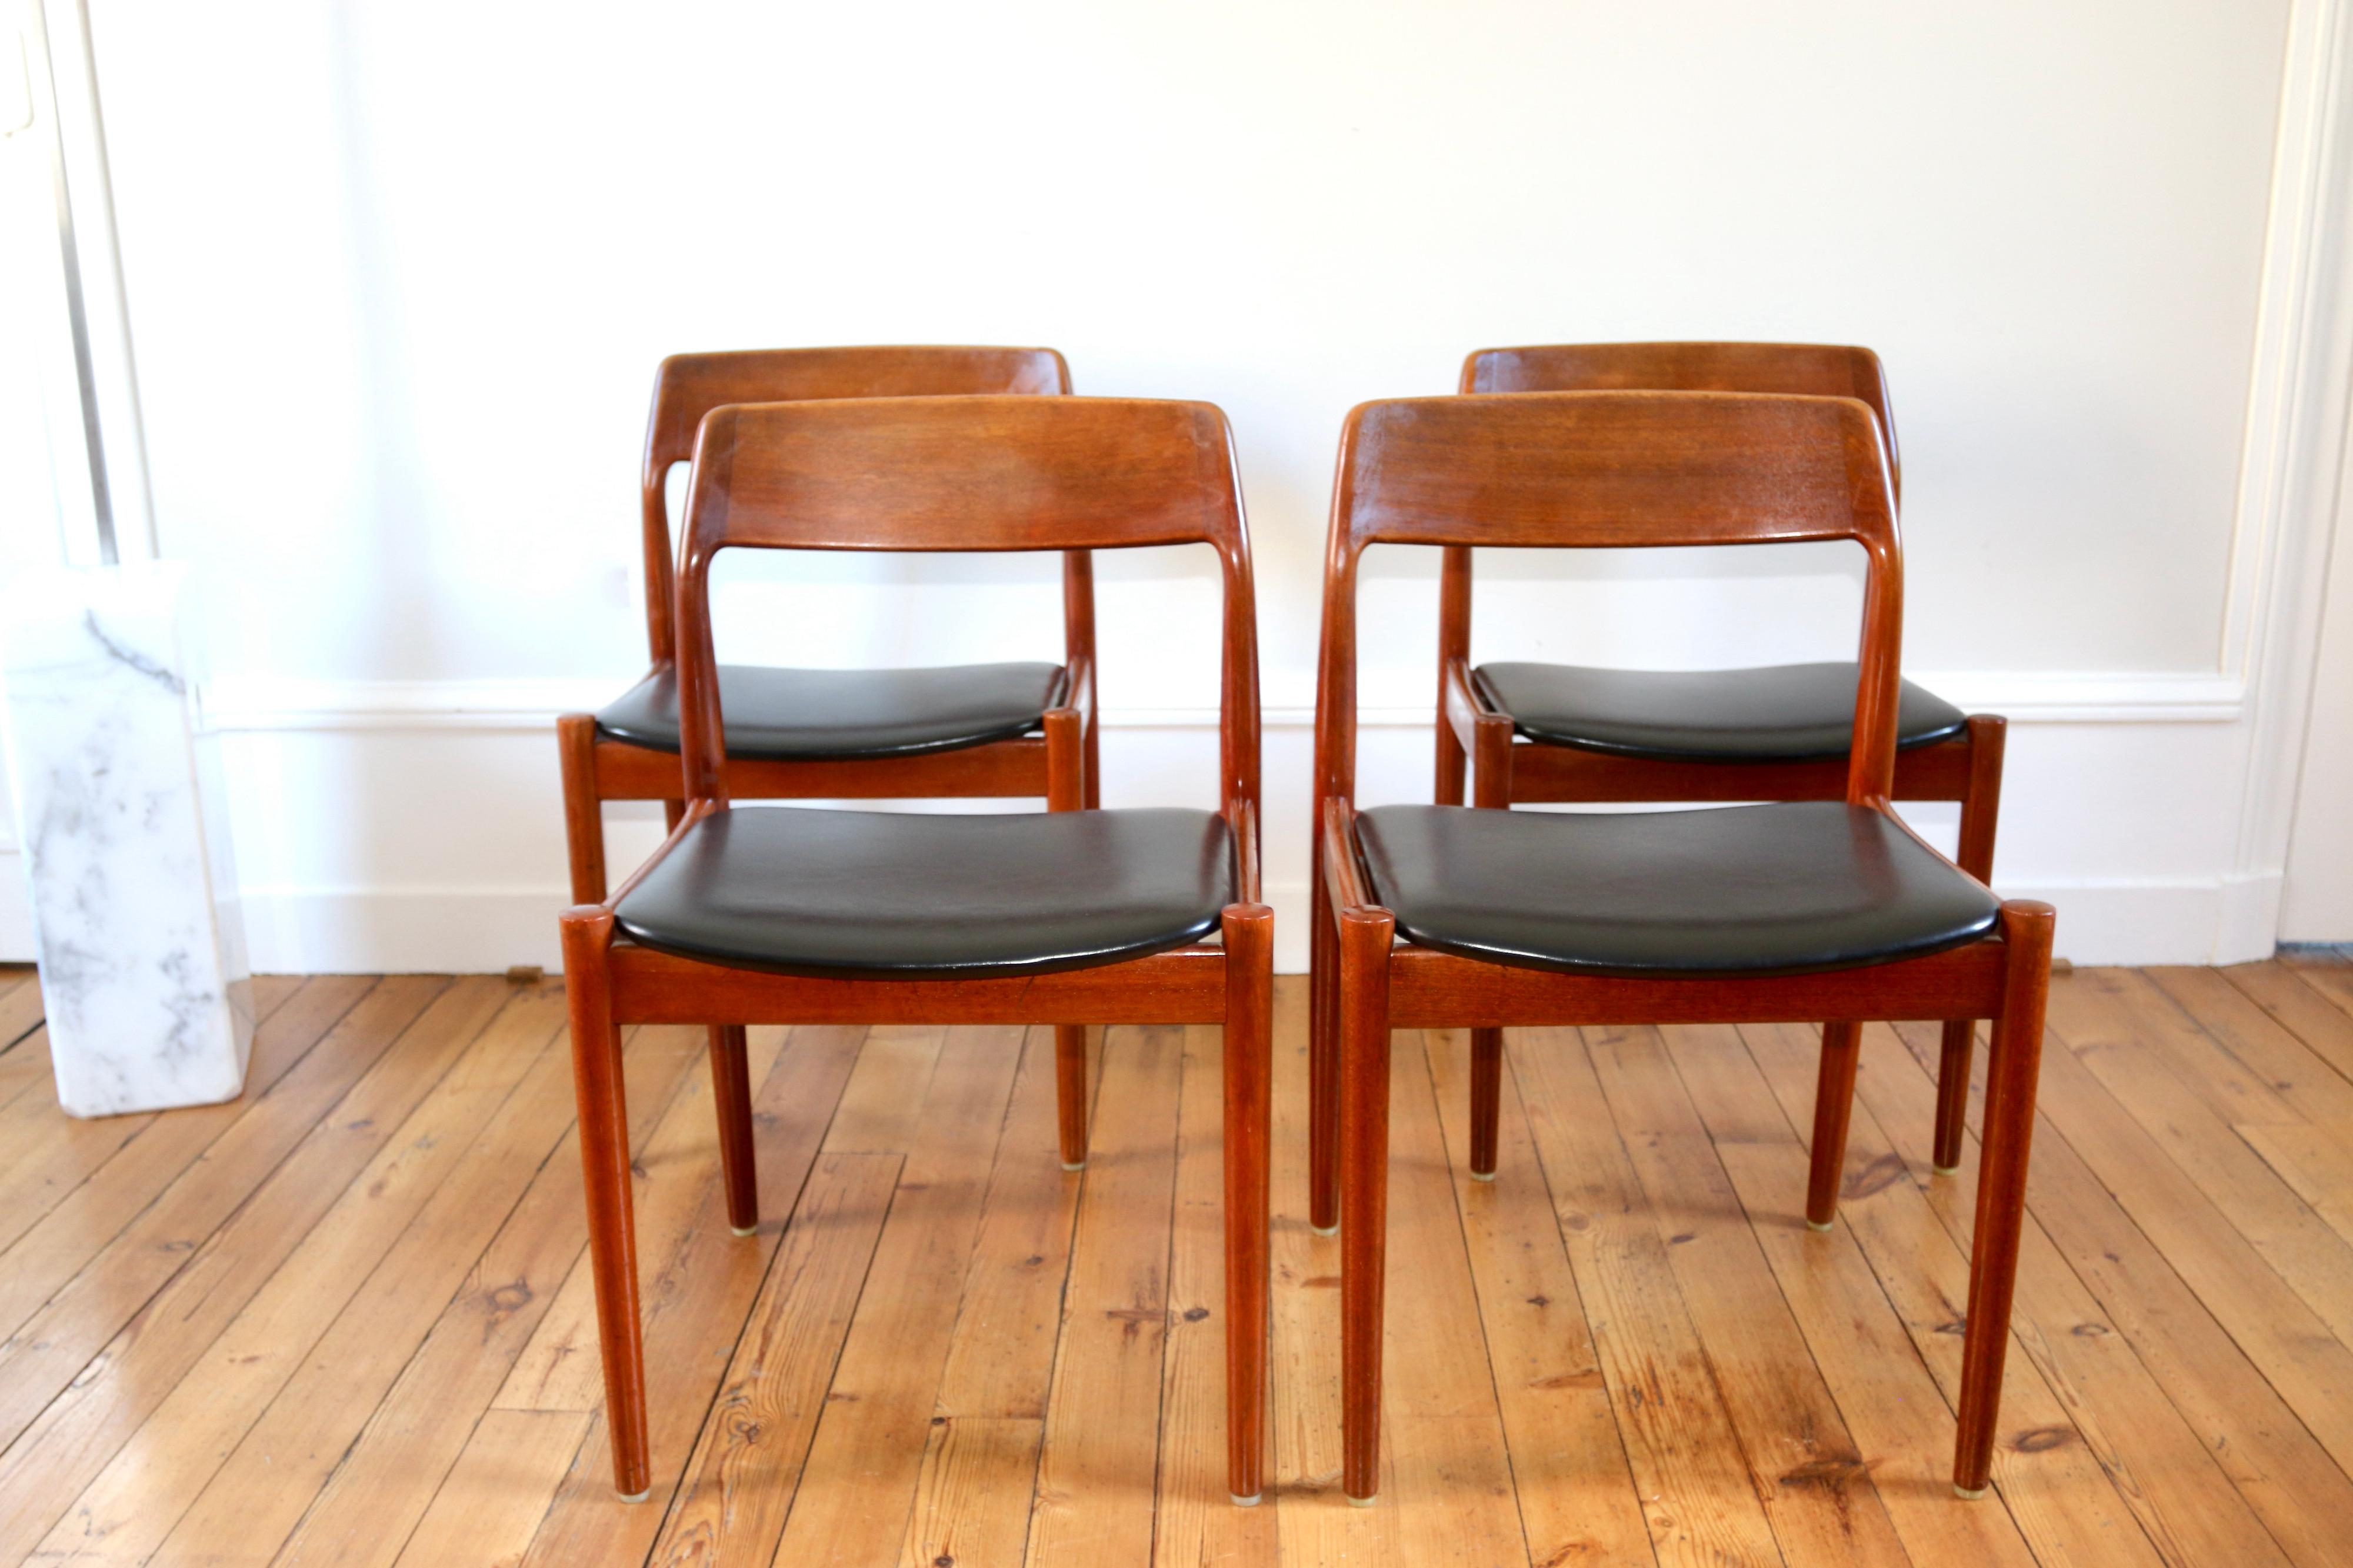 Série de 4 chaises danoises en teck édités par Scanti Mobelvaerk, distribuées par Roche Bobois dans les années 60

en bon état, seuls à noter quelques signes du temps

dimensions : hauteur 77 cm X hauteur d'assise 44 cm x largeur 49 cm x profondeur